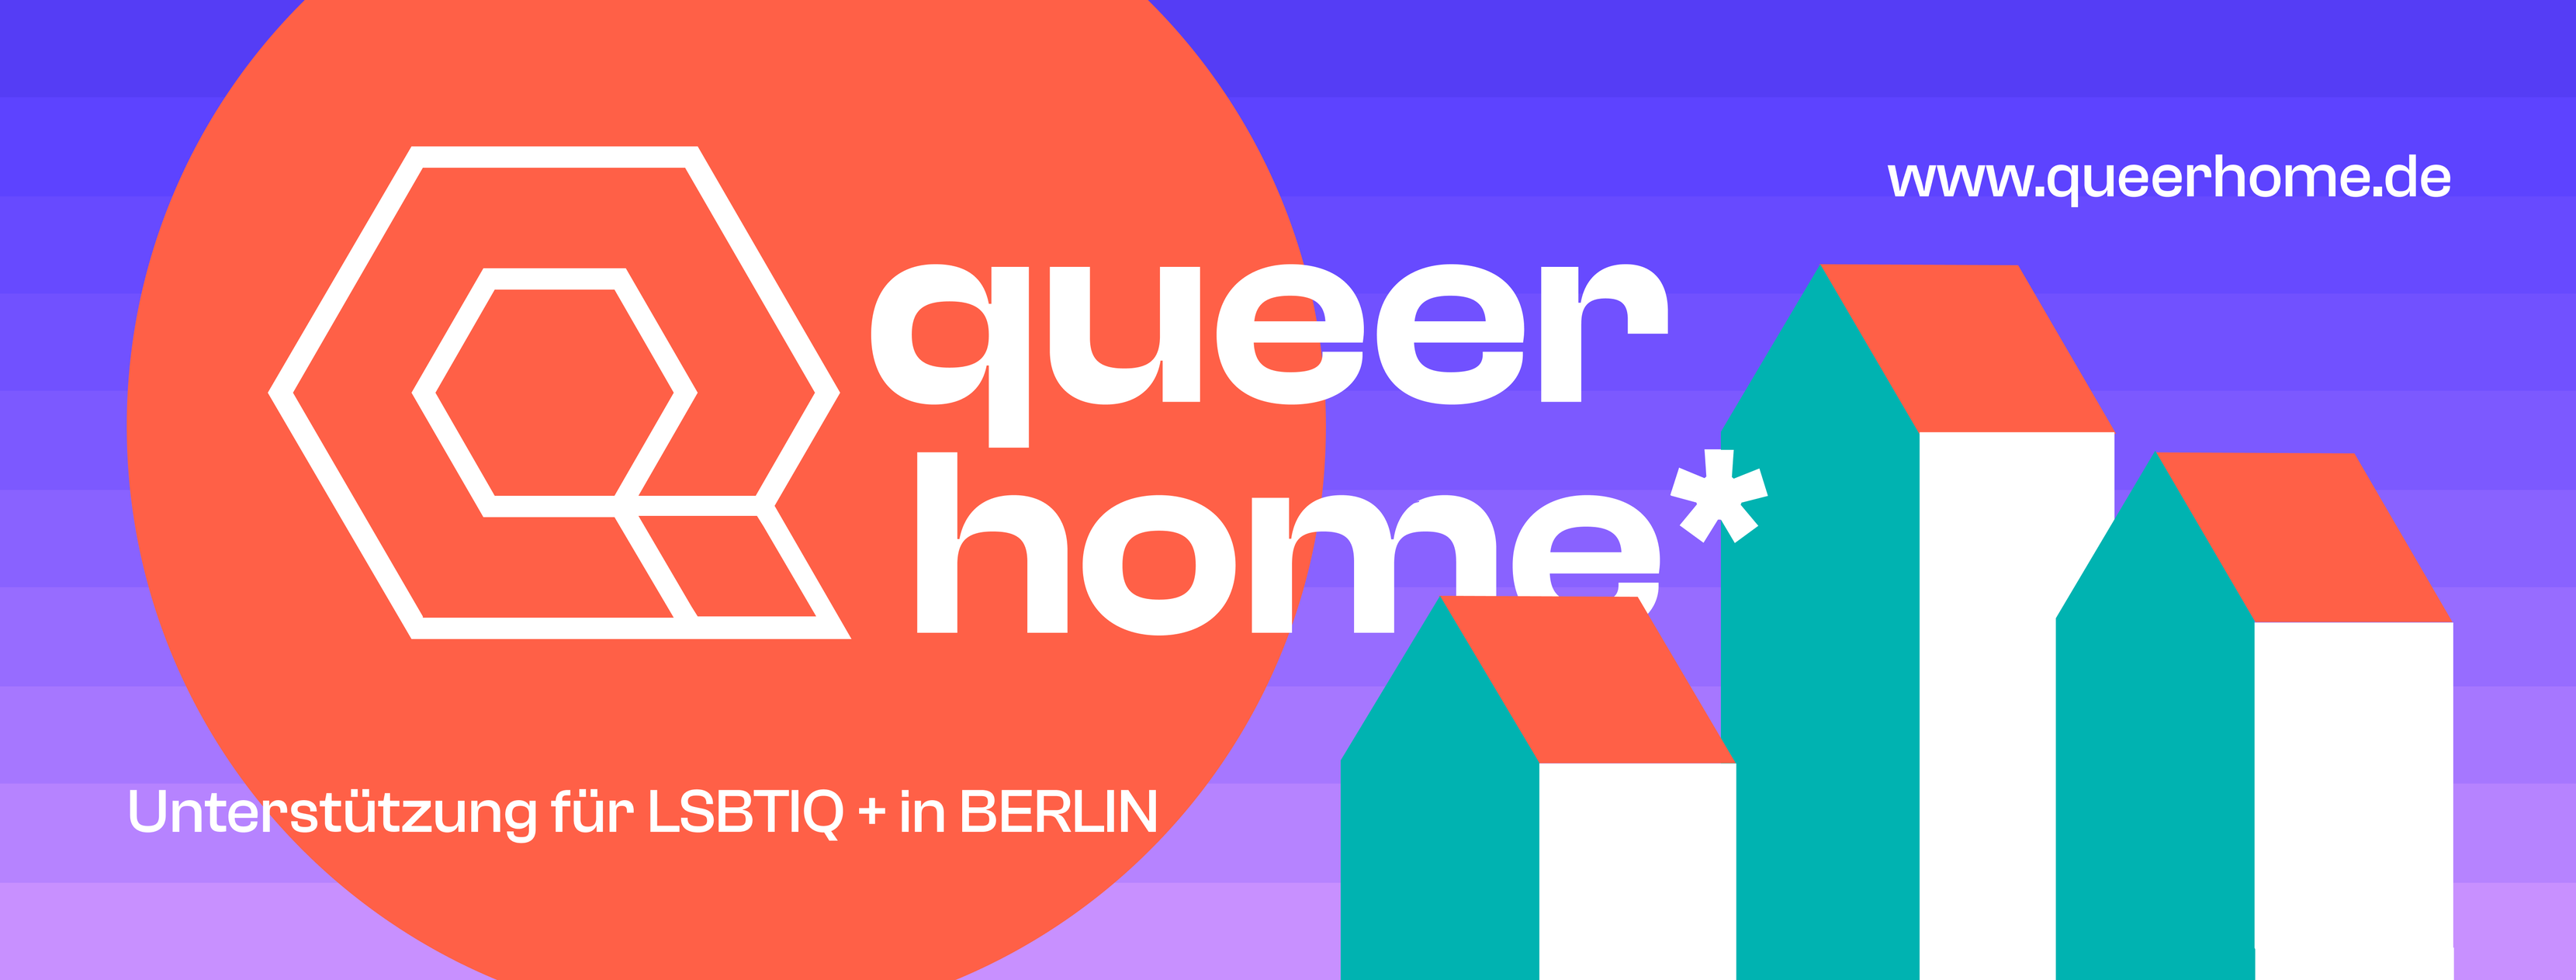 Queerhome: Unterstützung für lsbtiq+ in Berlin